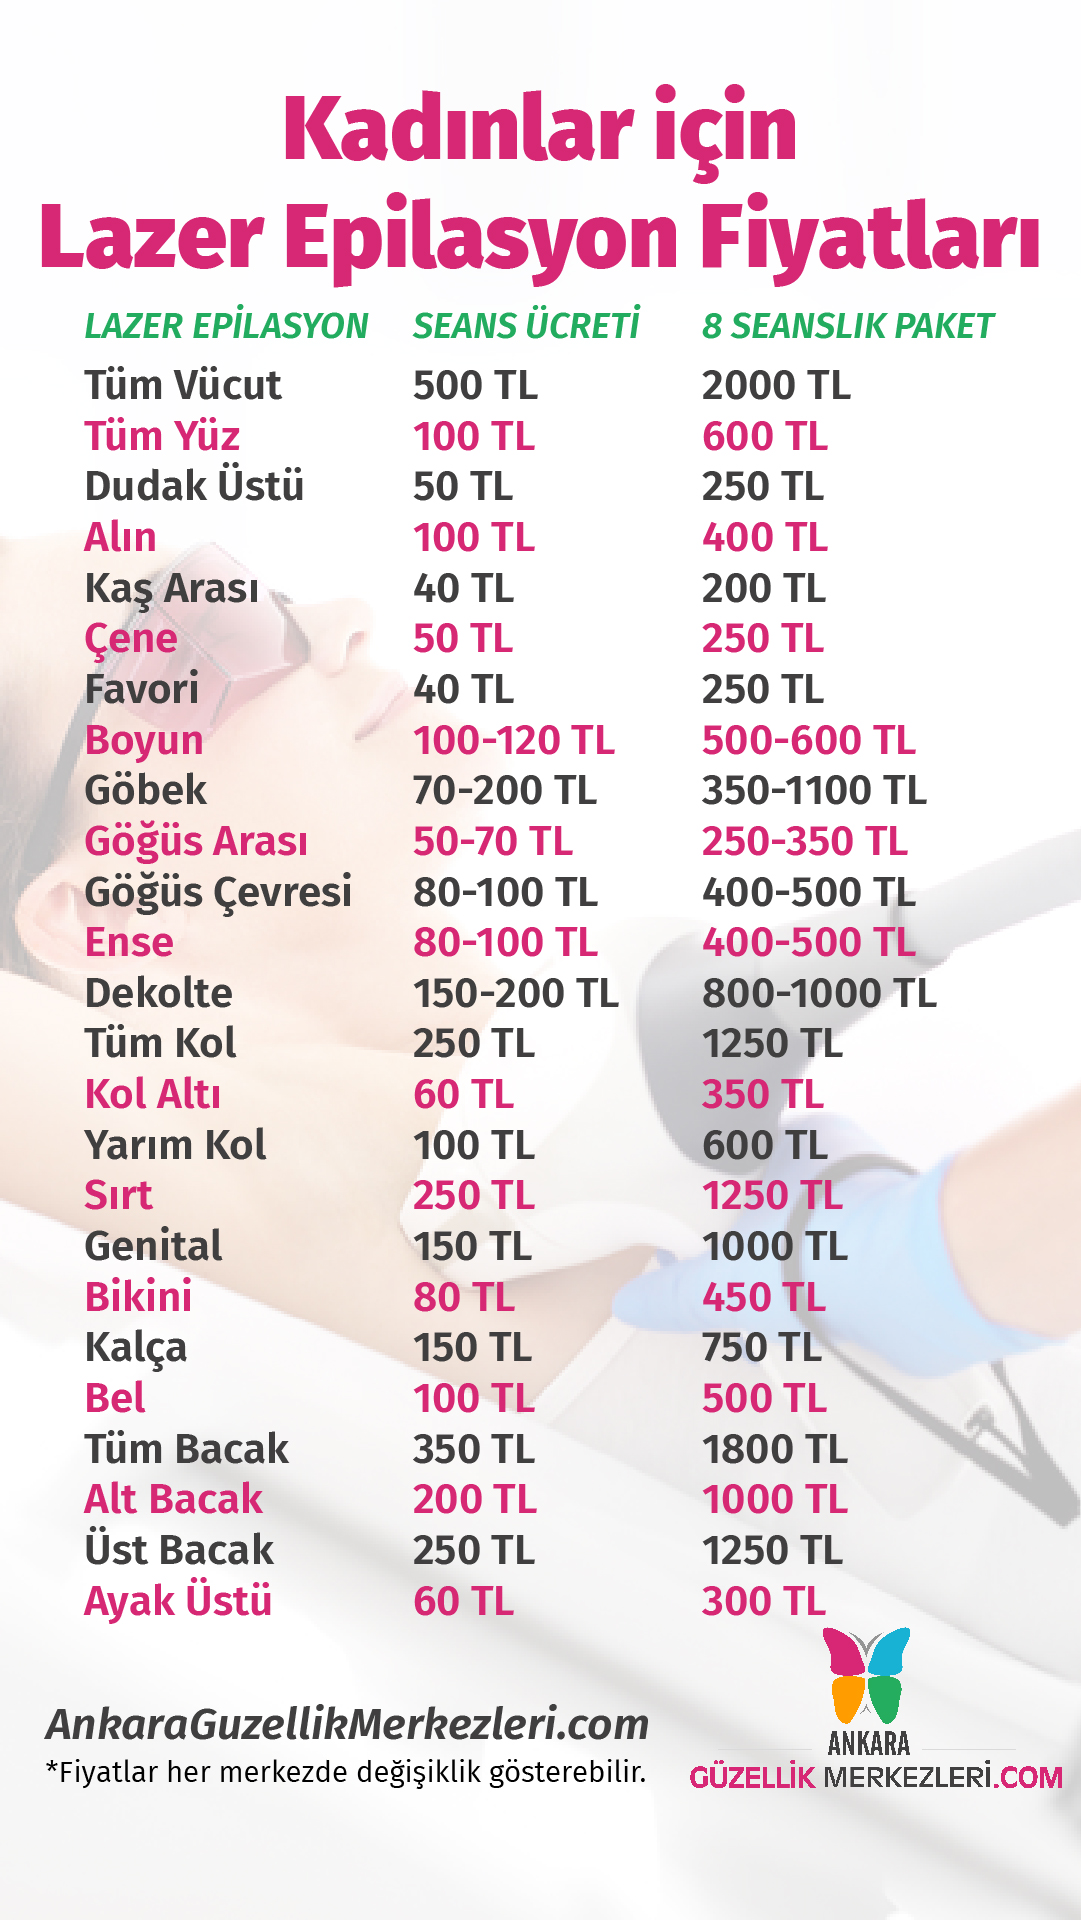 Goz Cizdirme Fiyatlari 2020 Sgk Anlasmali Ozel Ve Devlet Hastaneleri Fiyatlari Hayatin Icinden Haberler Hayatin Icinden Haberler